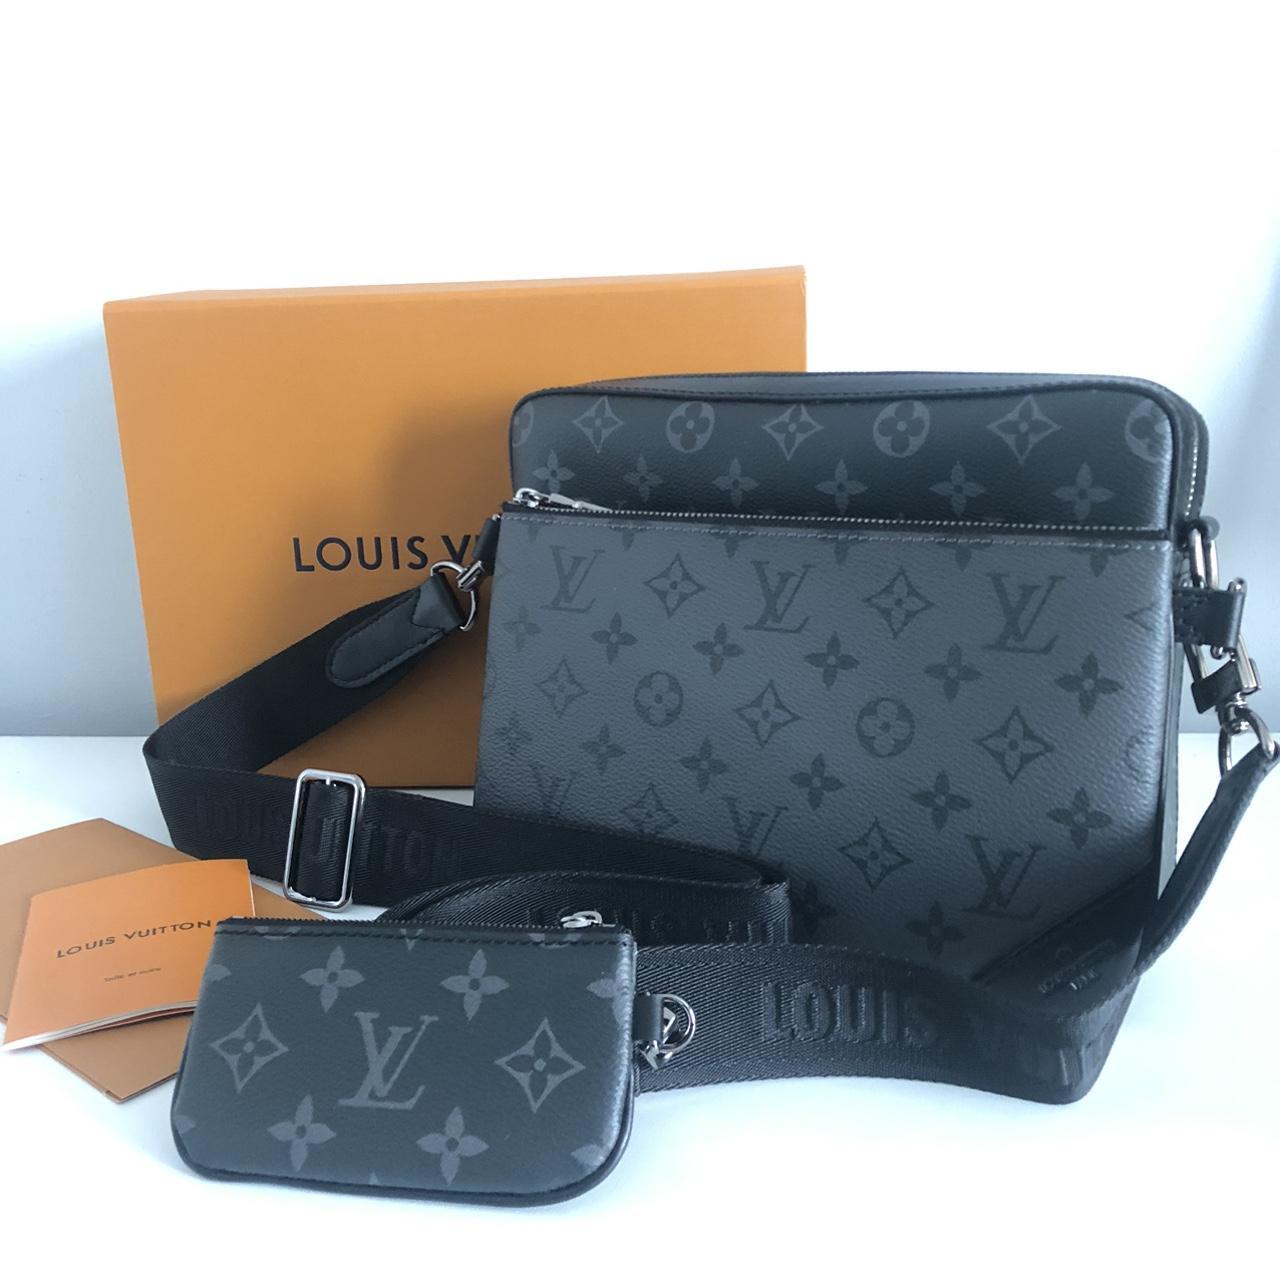 Louis Vuitton Trio Messenger Bag Used a couple... - Depop